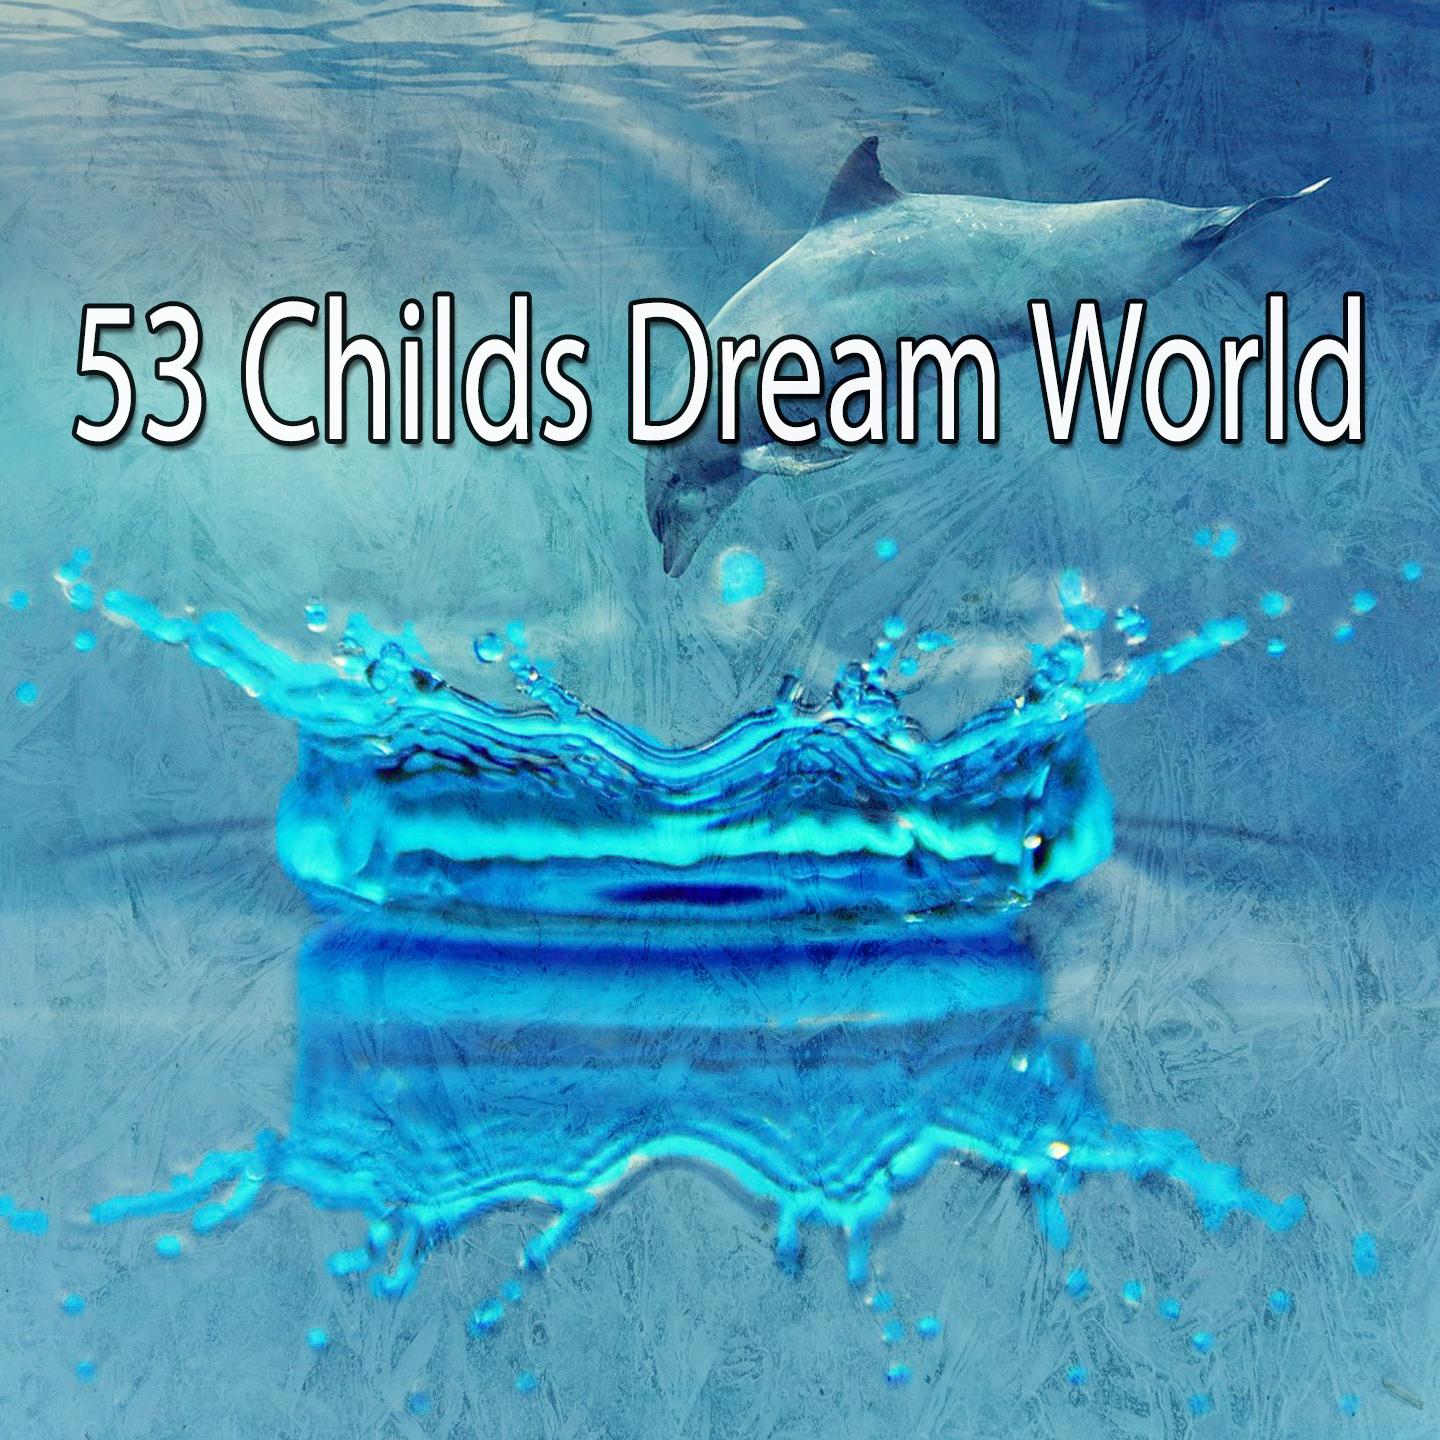 53 Childs Dream World